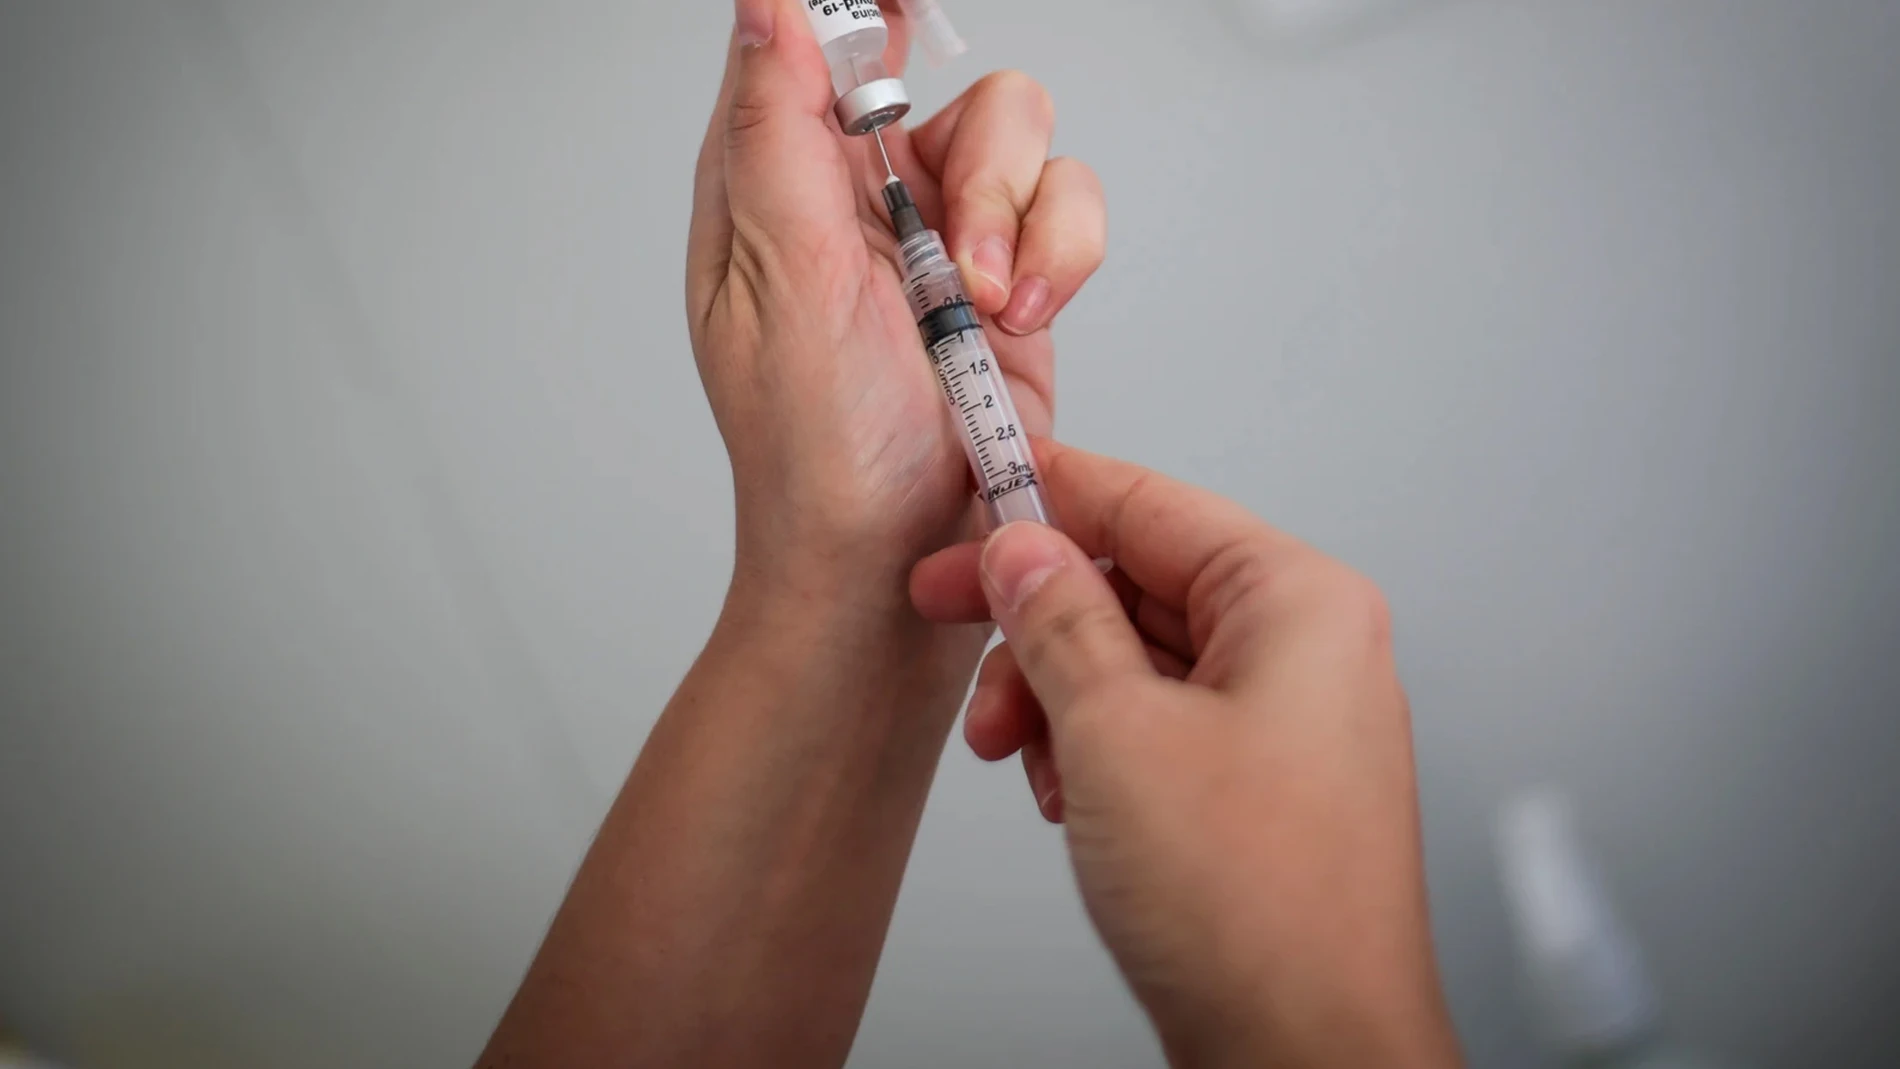 A3 Noticias Fin de Semana (31-07-21) Se suspenden los ensayos en humanos de la vacuna española contra el Covid-19